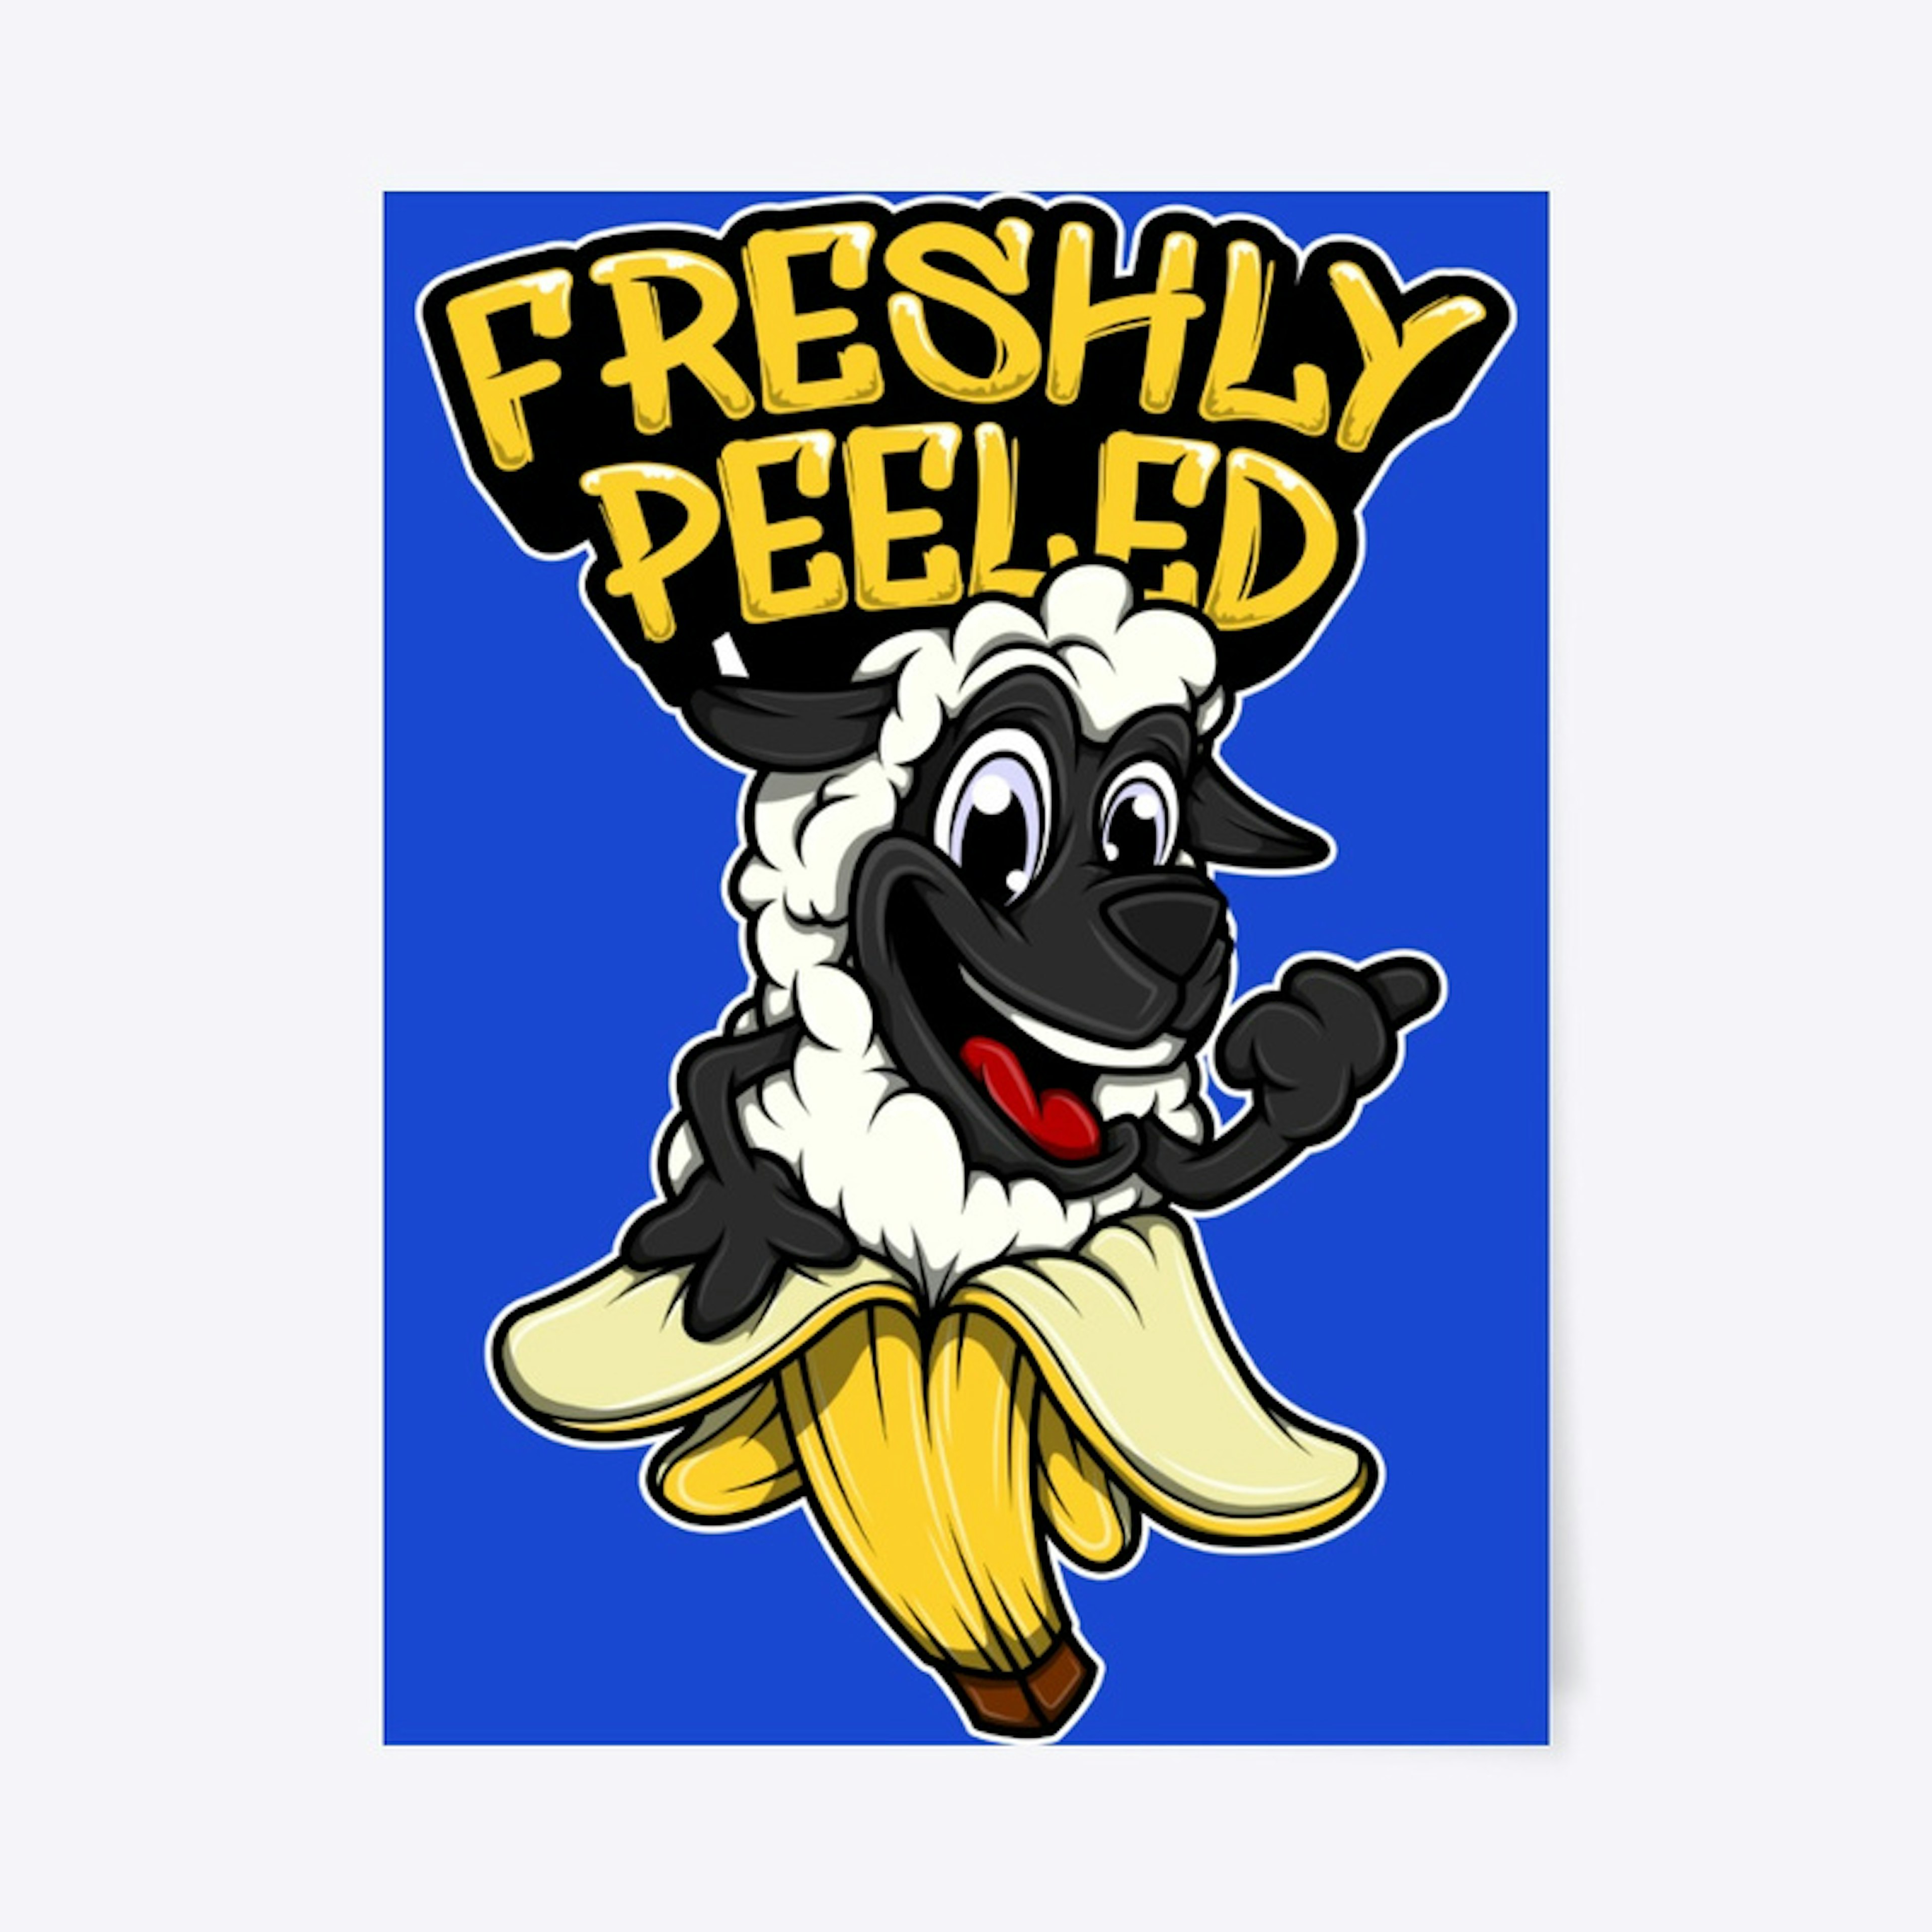 "FRESHLY PEELED" ™  Happily Peeled 🐑